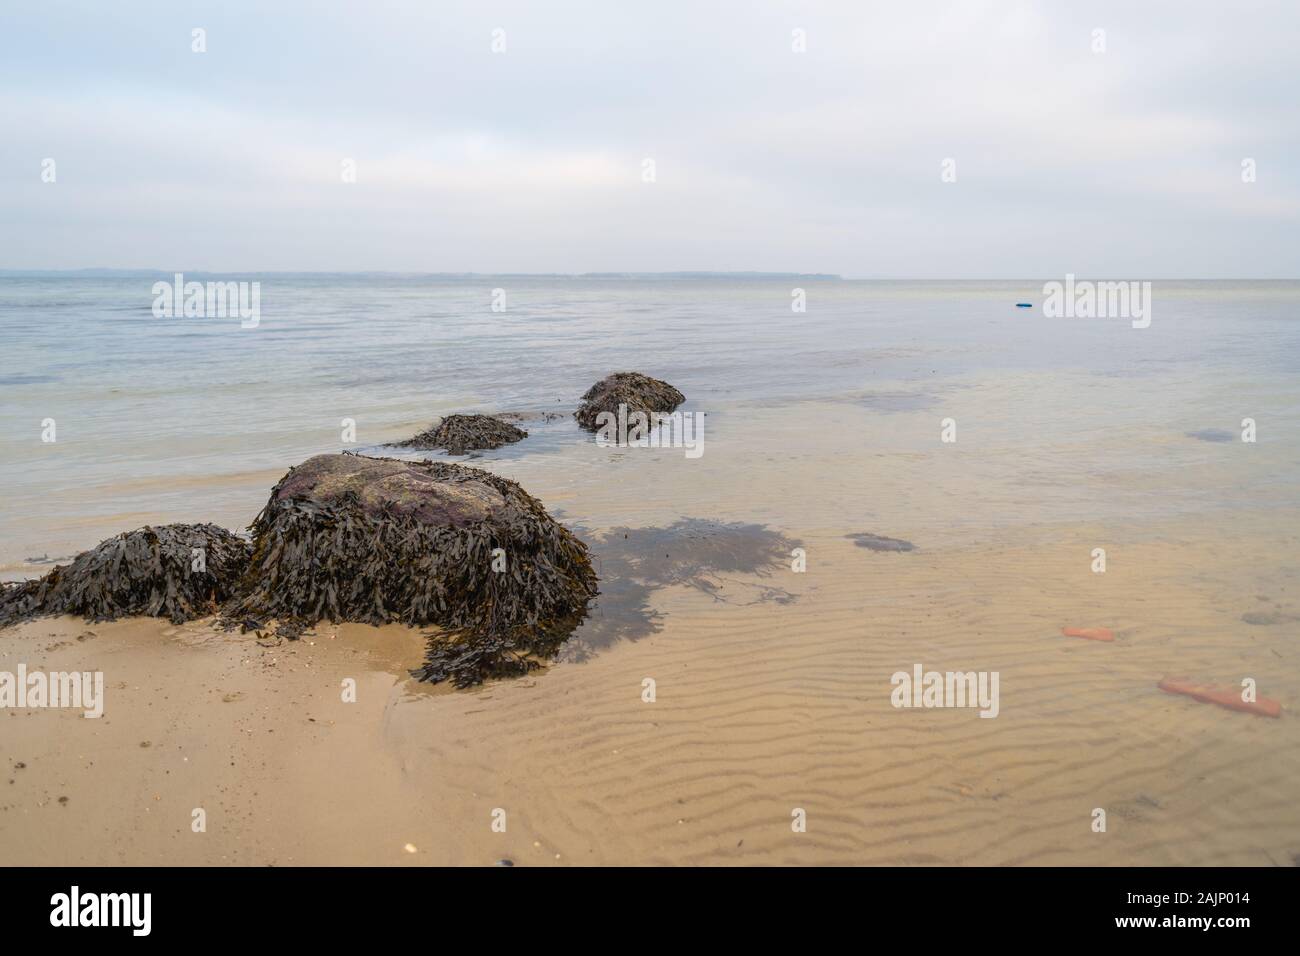 Il y a beaucoup d'algues sur les pierres sur la plage de sable Banque D'Images